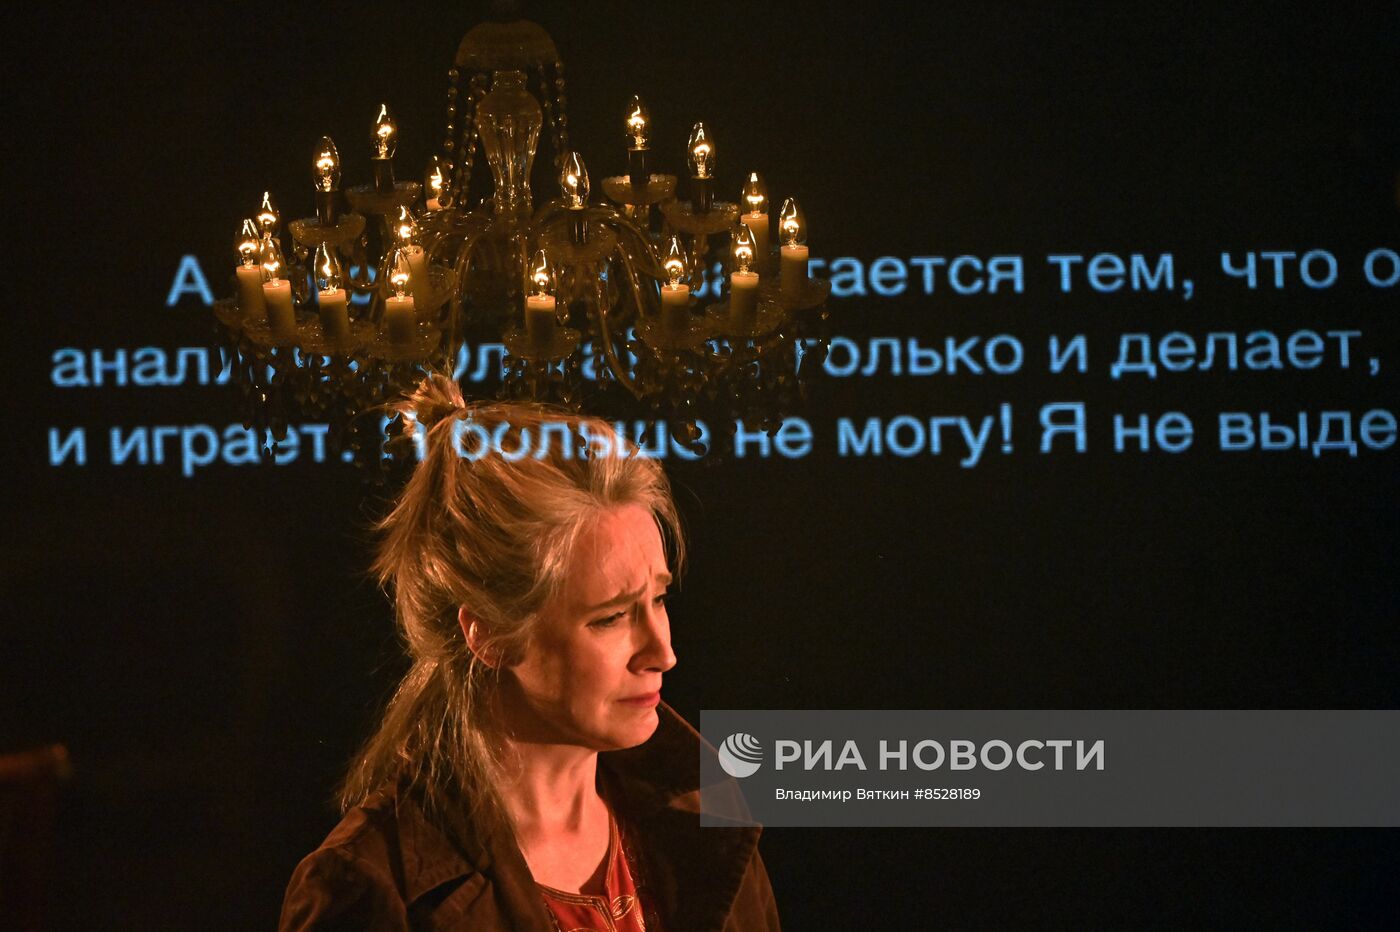 Спектакль "В Москву! Палимпсест" в рамках Театрального фестиваля им. А. П. Чехова